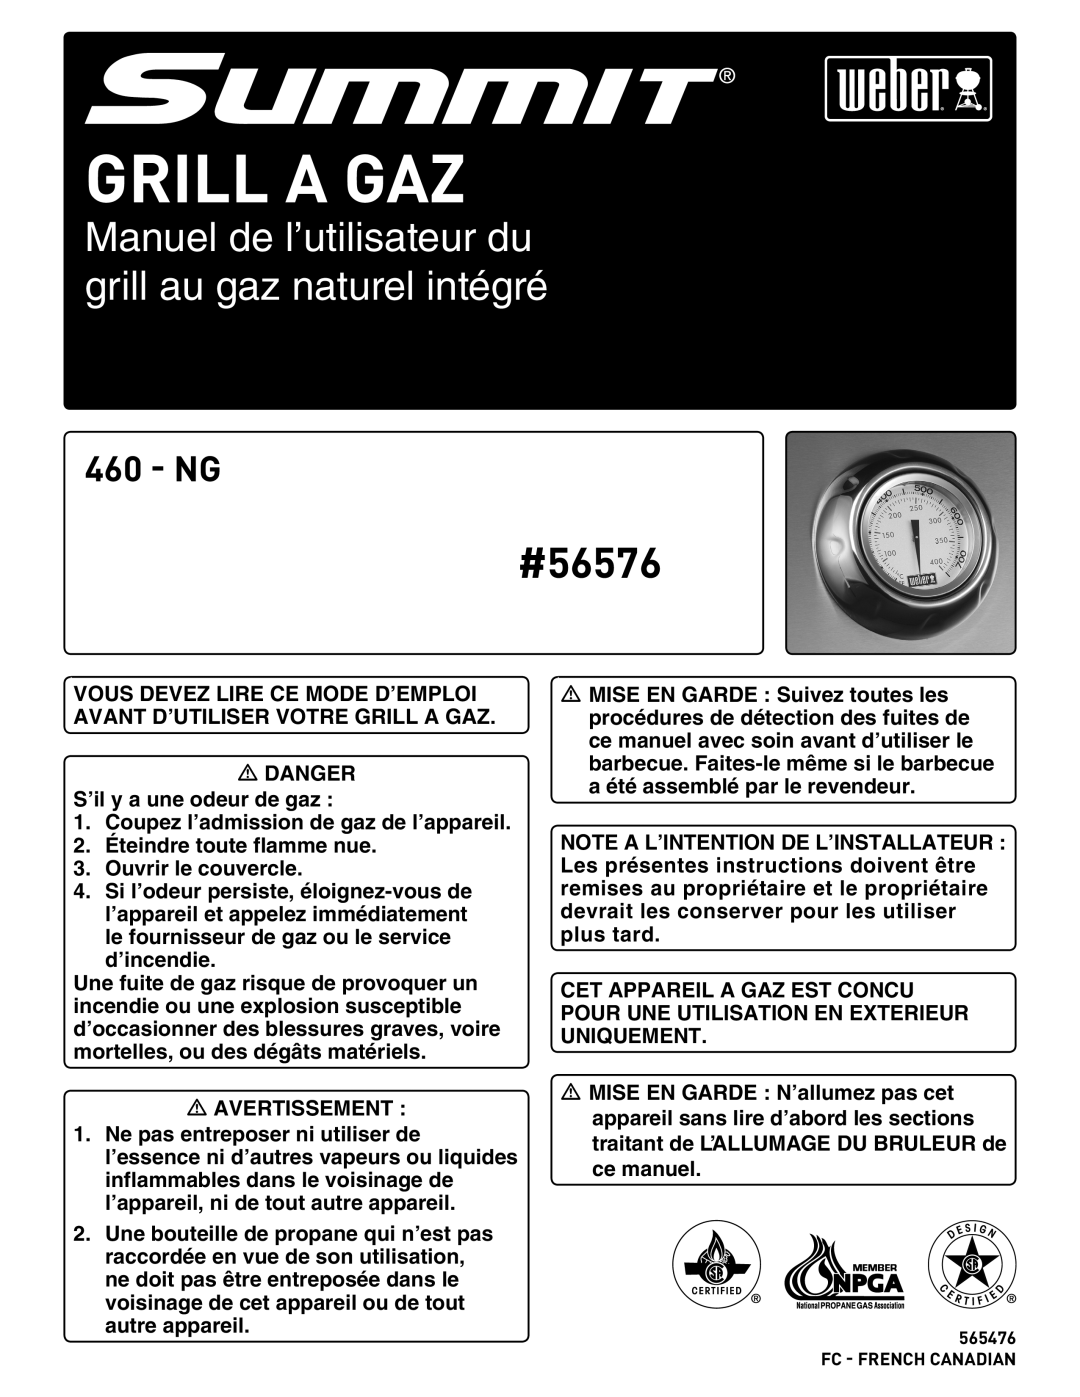 Weber Summit Gas Grill manual Grill A Gaz, Manuel de l’utilisateur du grill au gaz naturel intégré, #56576, Ng 